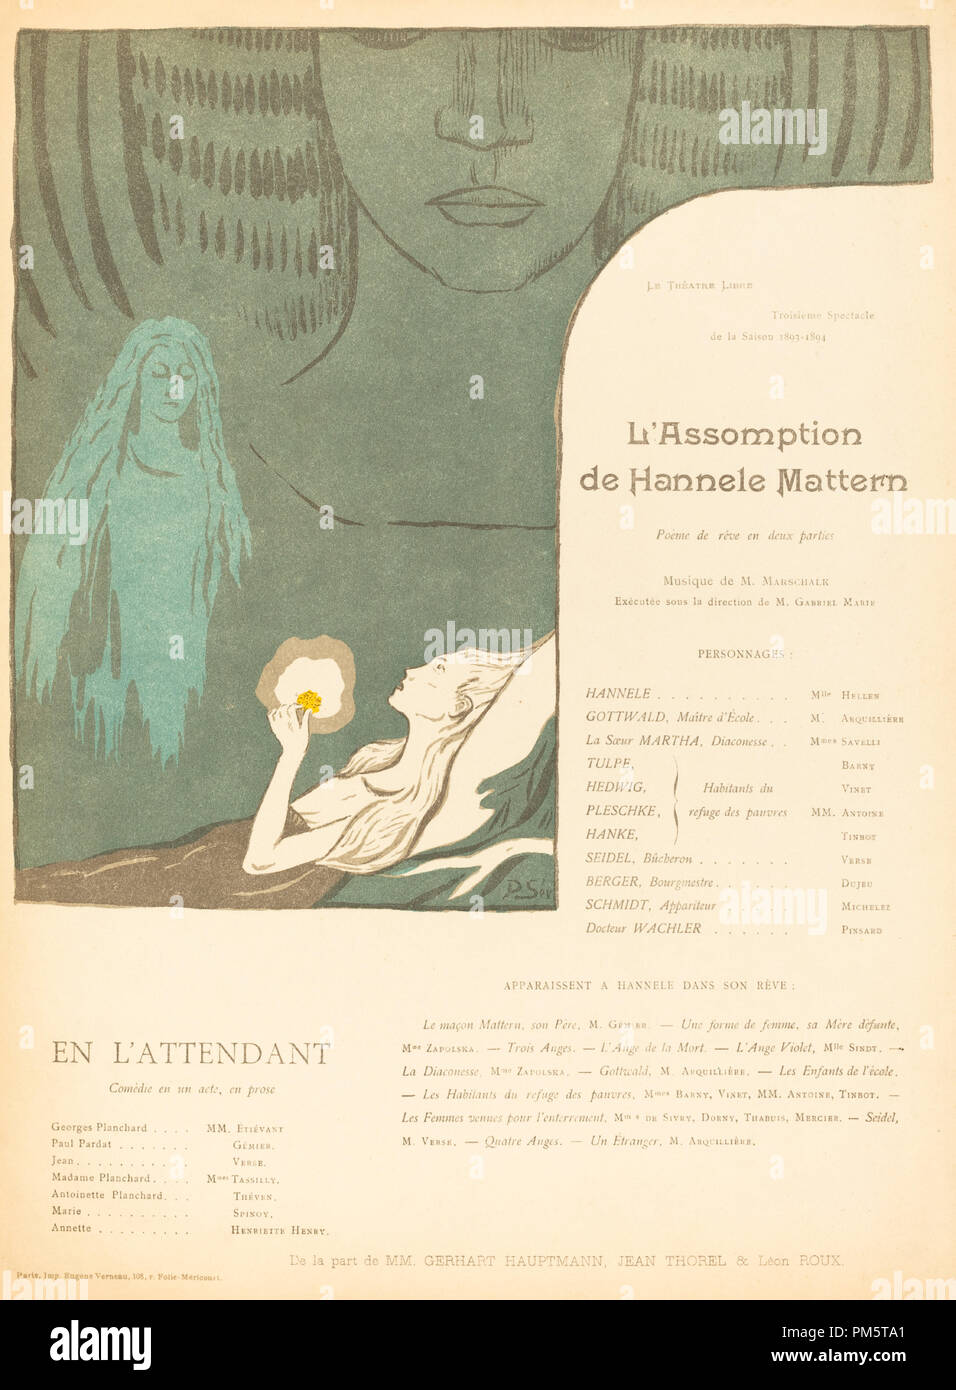 Lassomption De Hannele Mattern En Lattendant Dated 1894